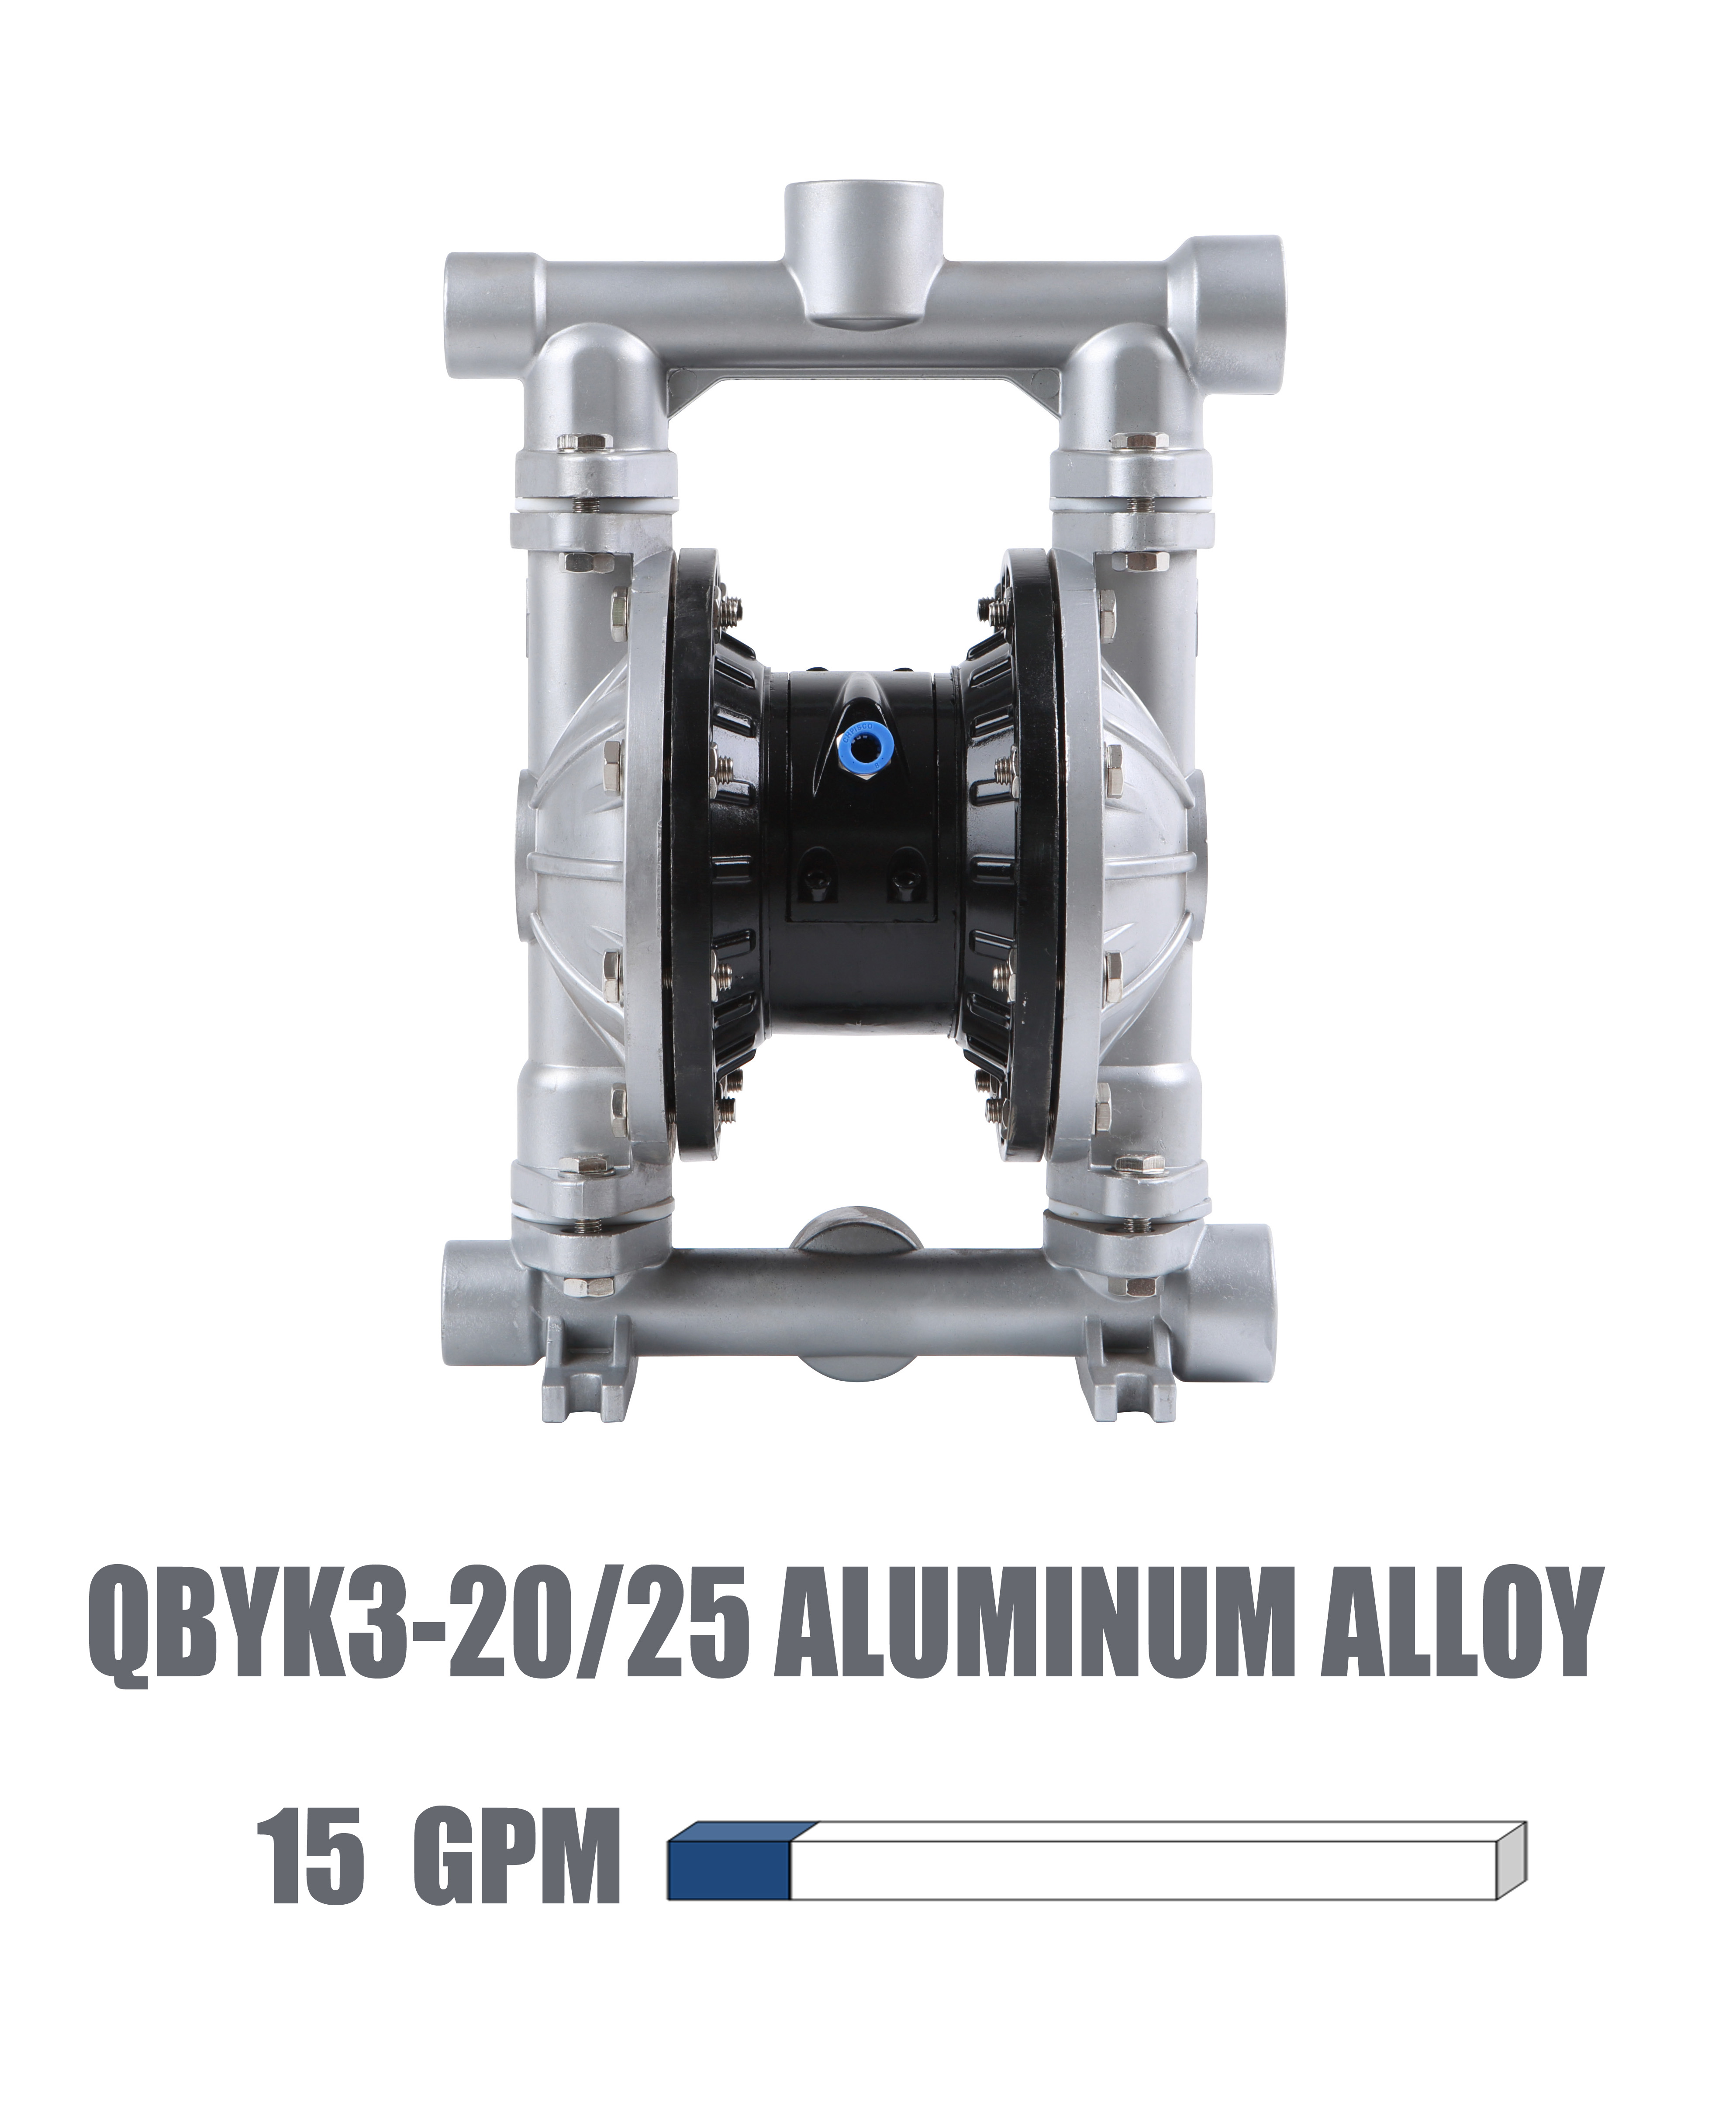 QBYK3-20/25 Aluminum alloy